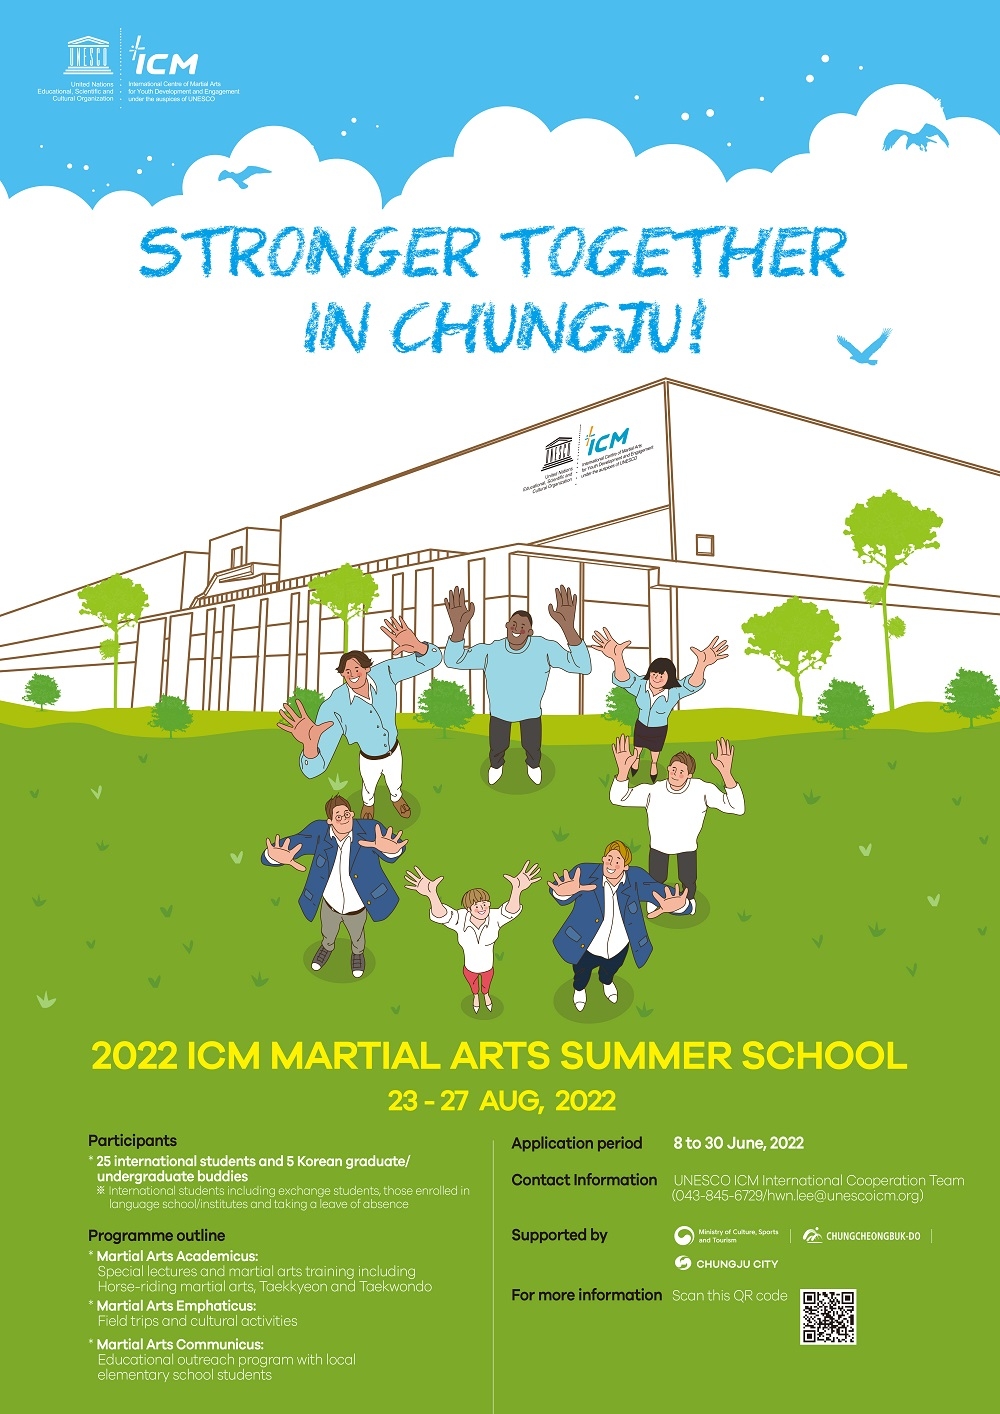 2022 ICM MARTIAL ARTS SUMMER SCHOOL 유학생 모집 홍보 포스터.jpg